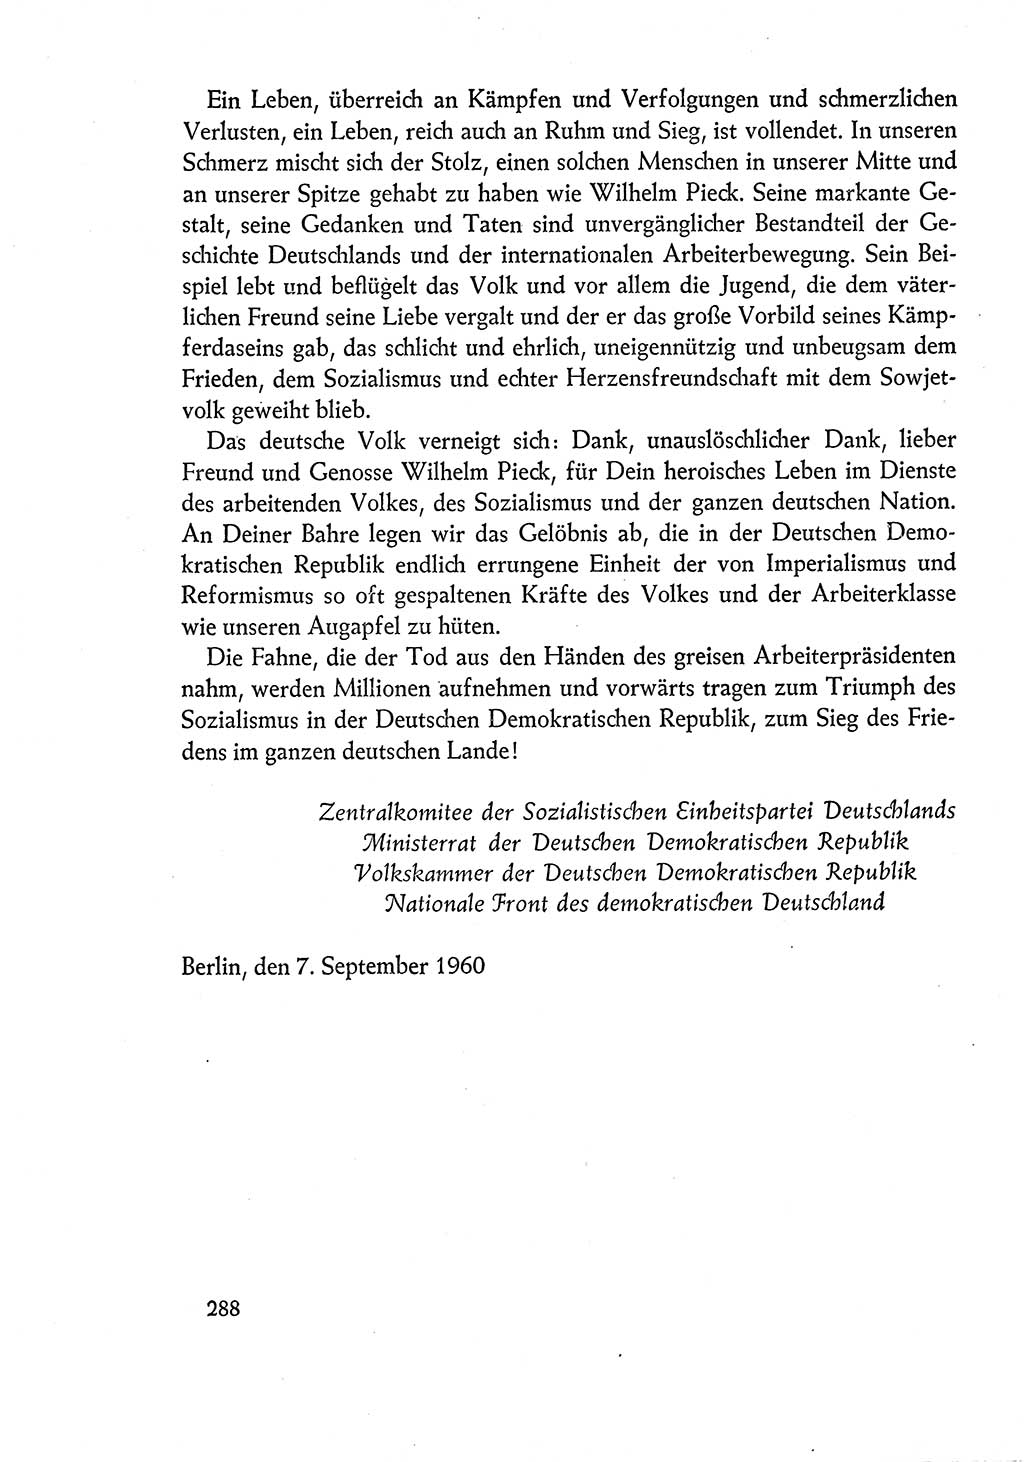 Dokumente der Sozialistischen Einheitspartei Deutschlands (SED) [Deutsche Demokratische Republik (DDR)] 1960-1961, Seite 288 (Dok. SED DDR 1960-1961, S. 288)